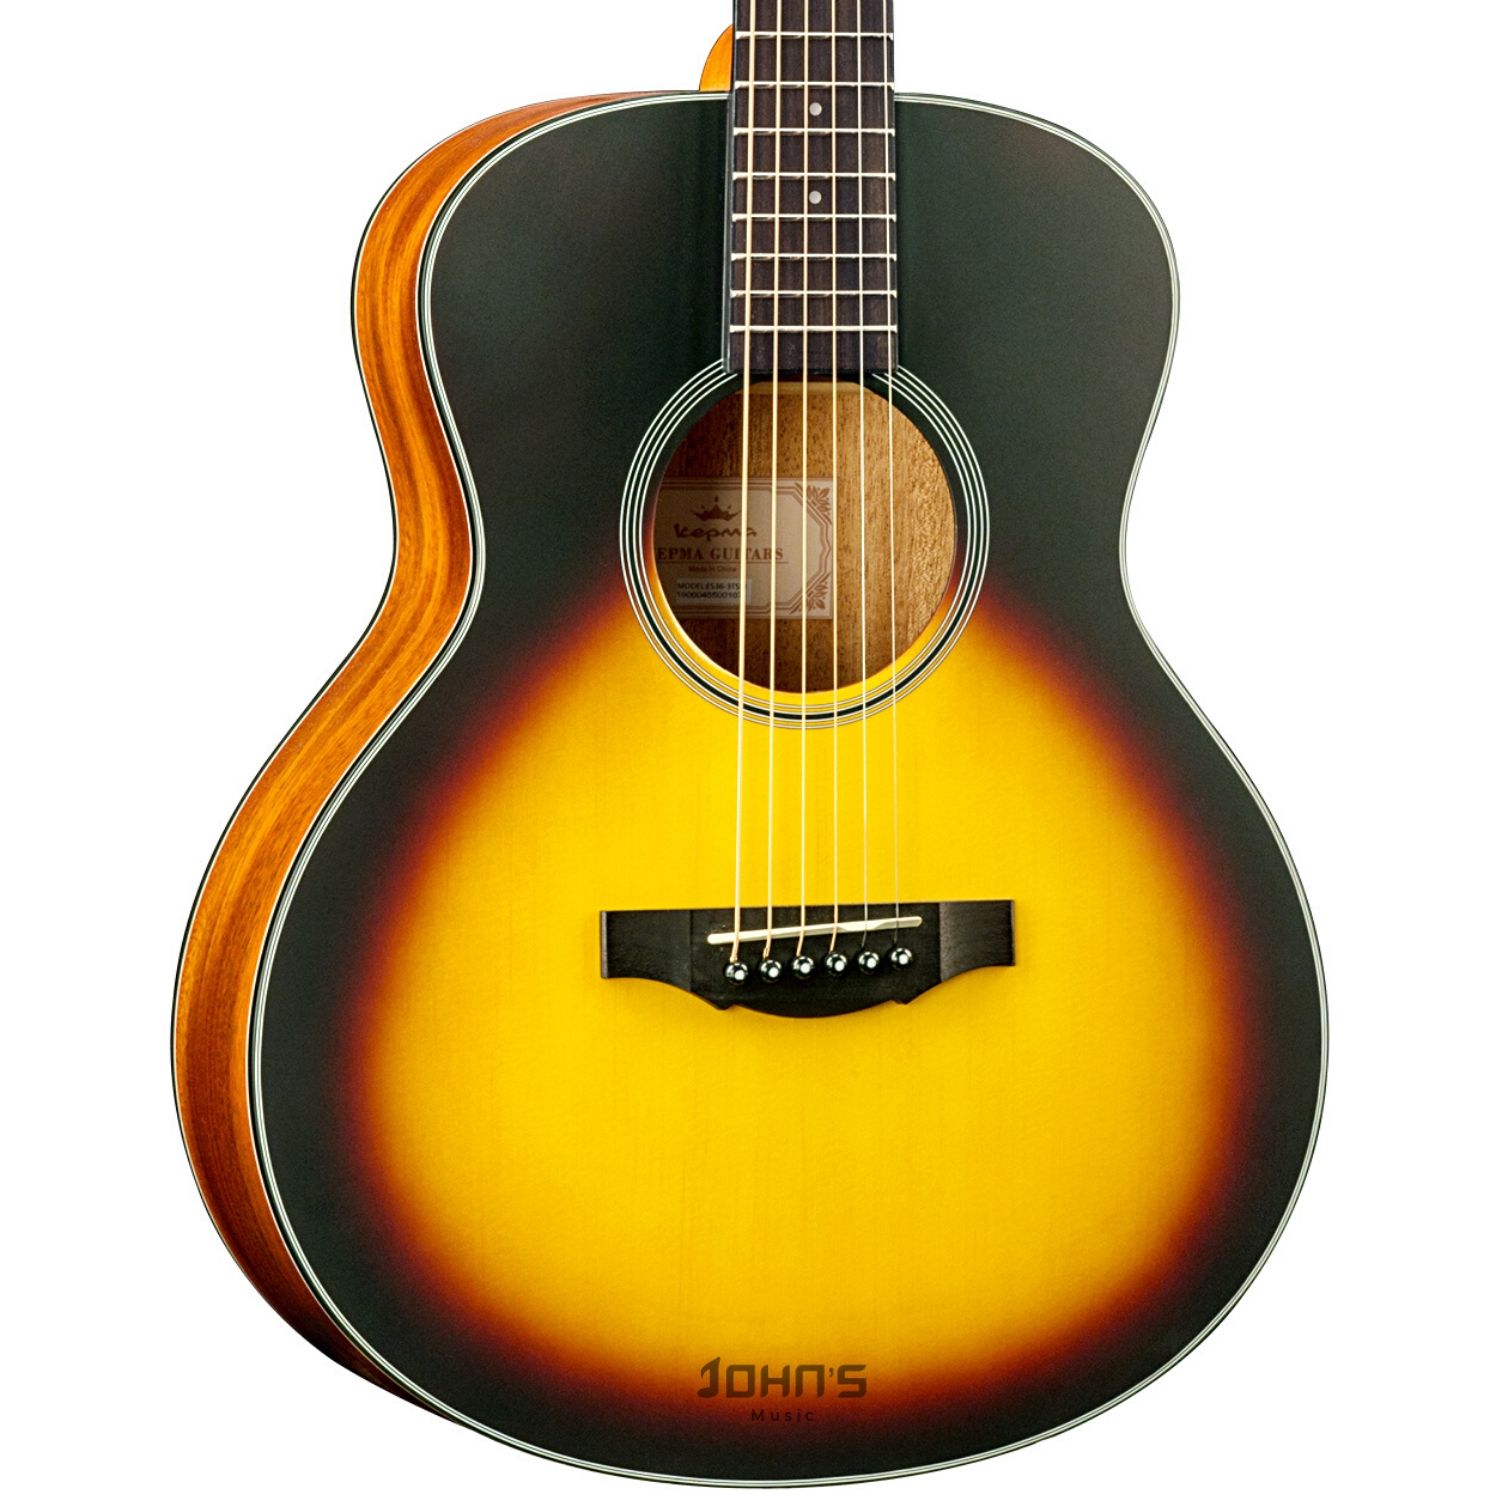 Kepma ES36 Travel Size Acoustic Guitar